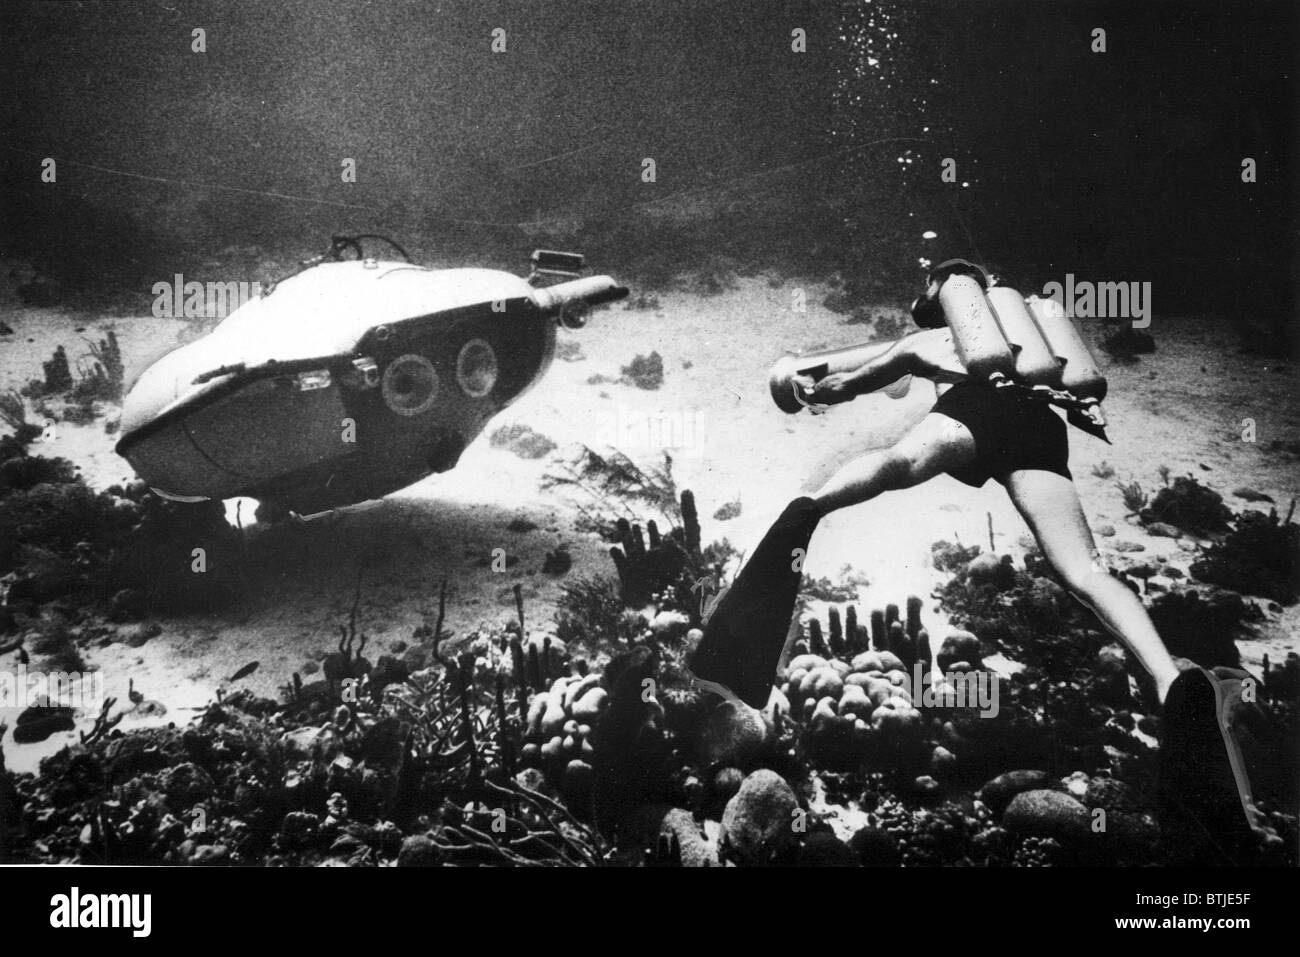 Soucoupe plongeante, et exploration underseas conçu et construit par le capitaine Jacques-Yves Cousteau, qui est capable d'operatin Banque D'Images